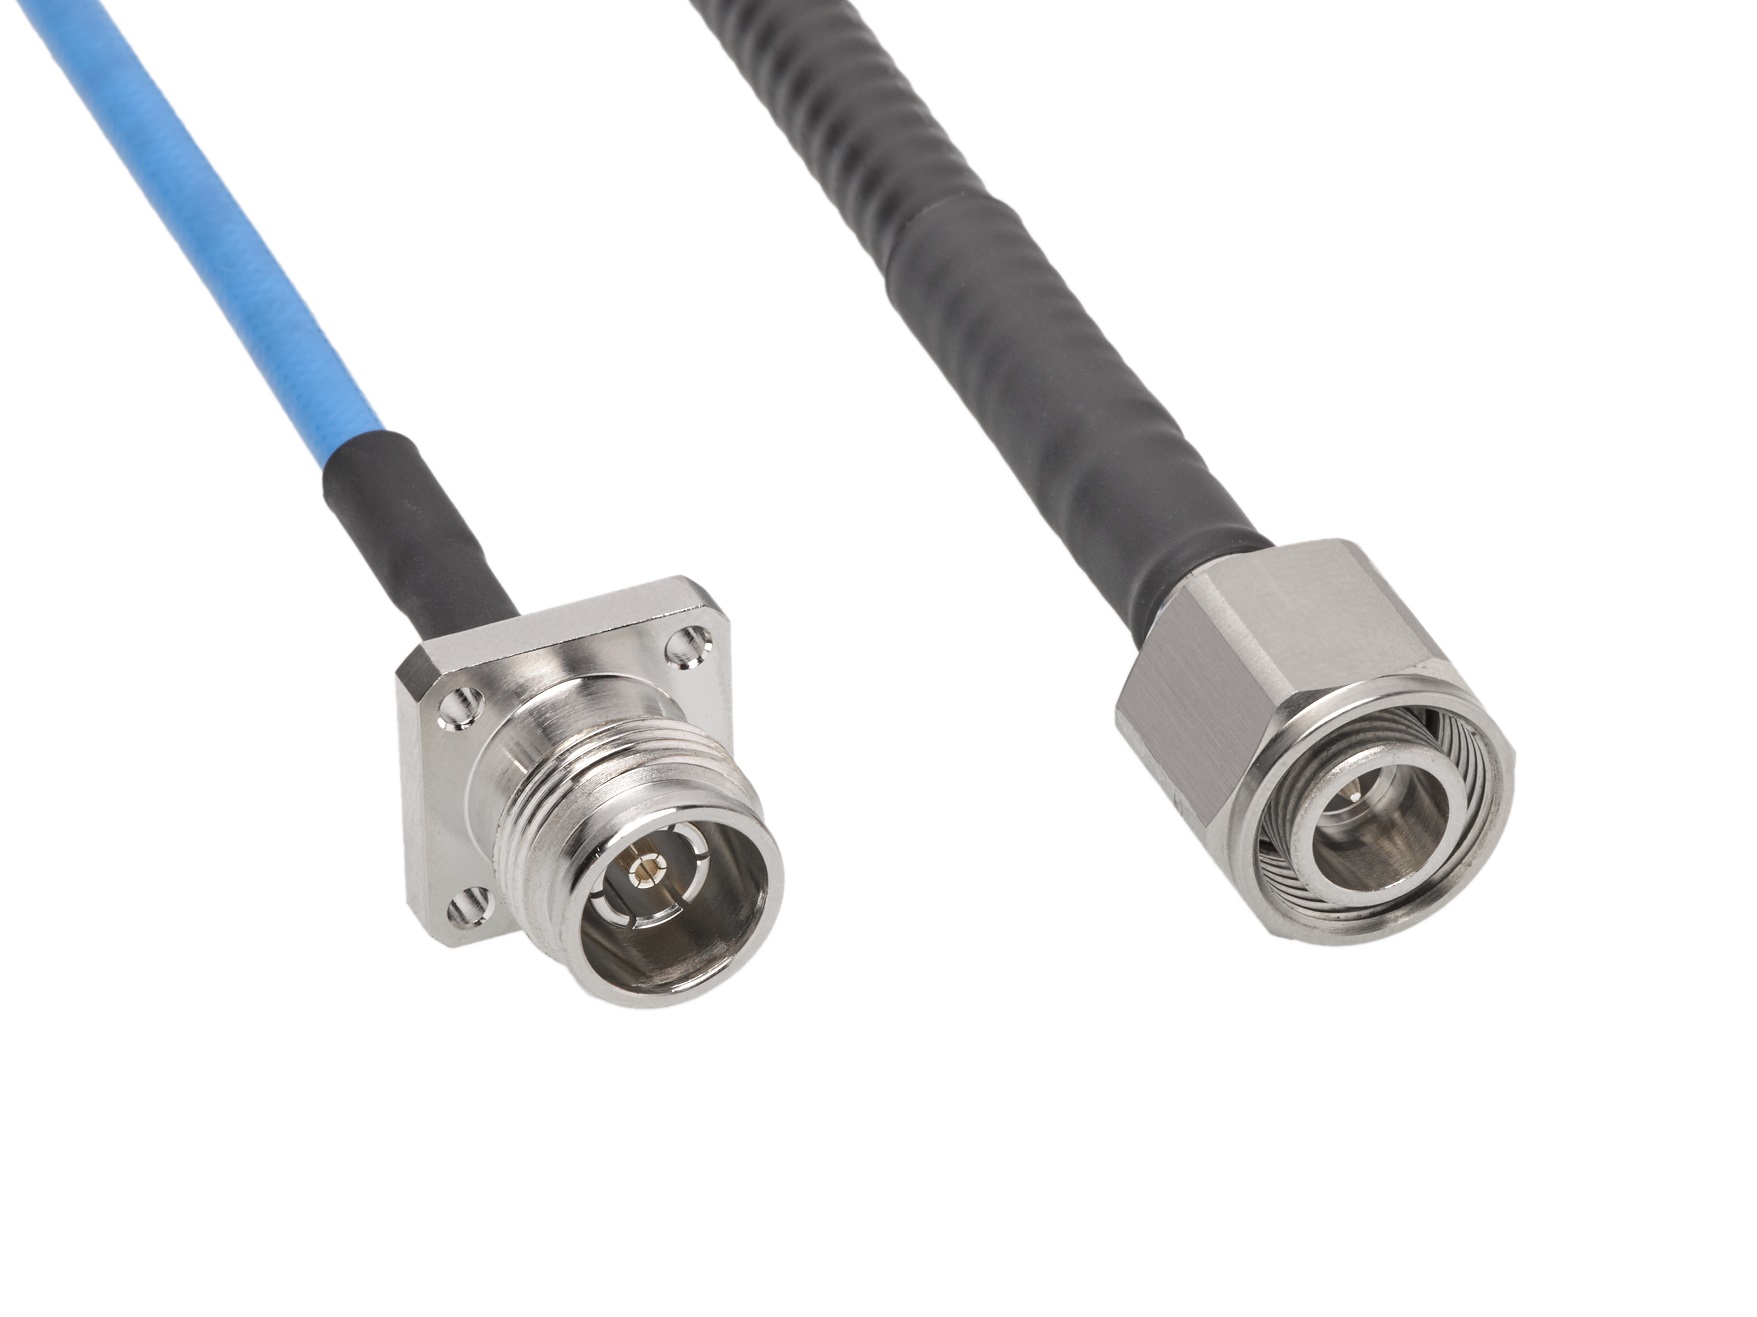 Molex 發布微型化 2.2-5 射頻連接器系統與電纜組件